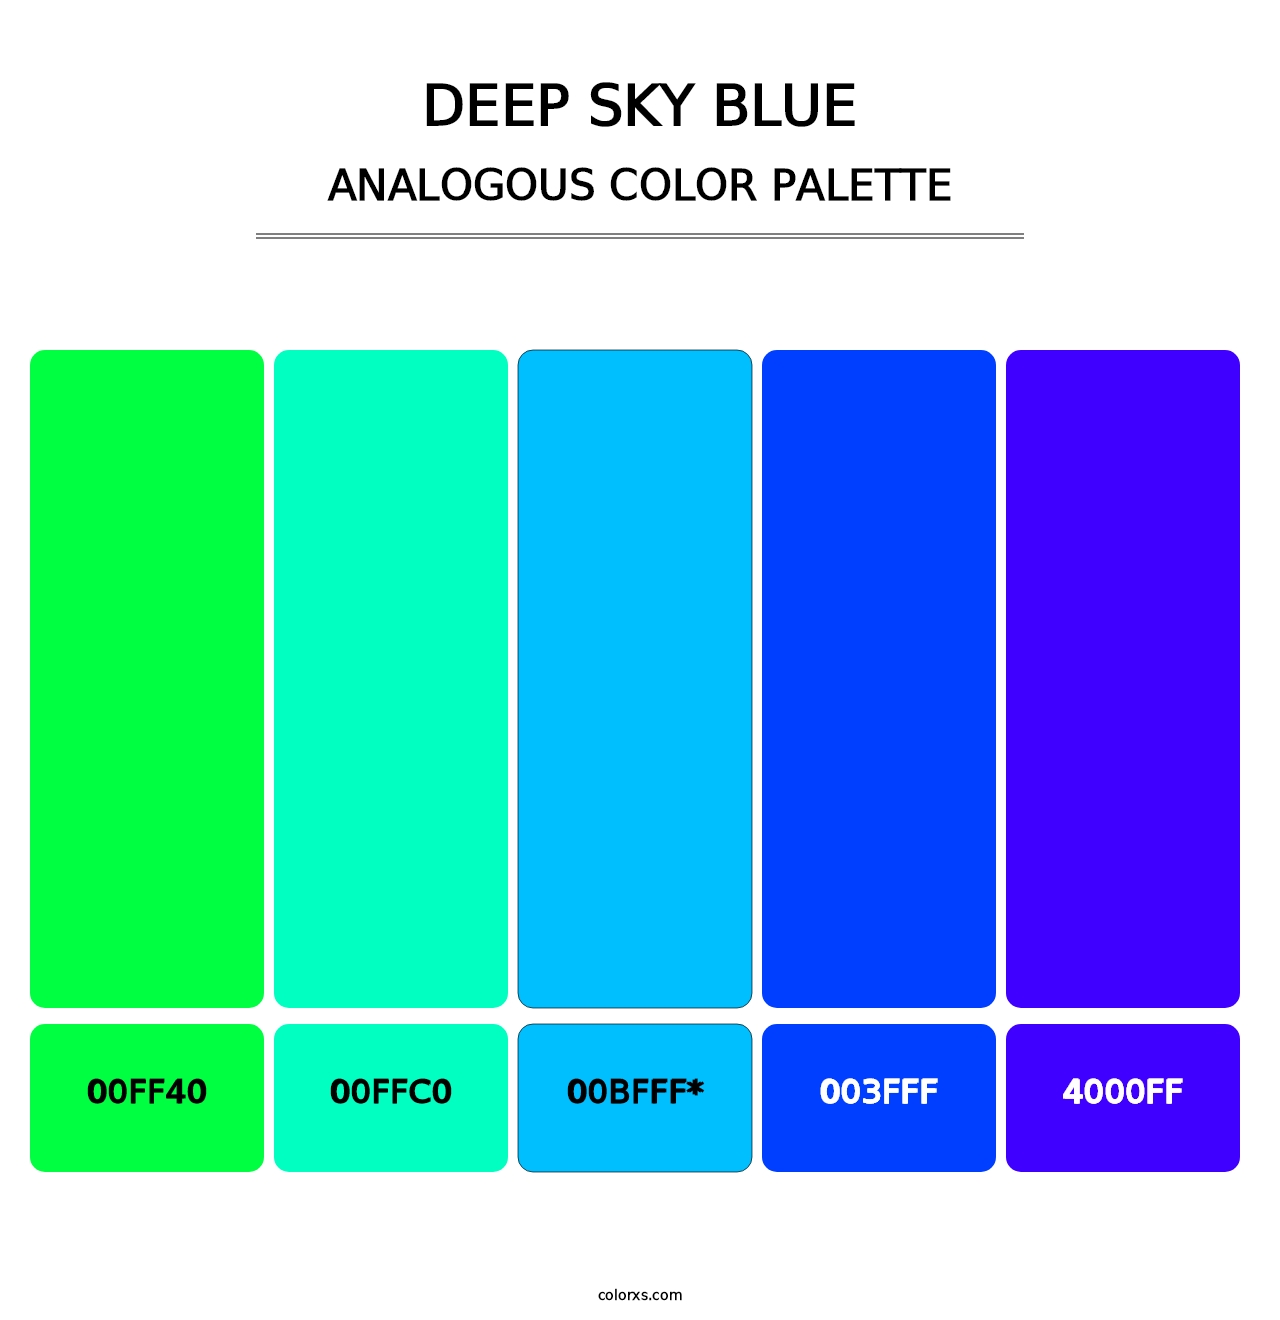 Deep Sky Blue - Analogous Color Palette